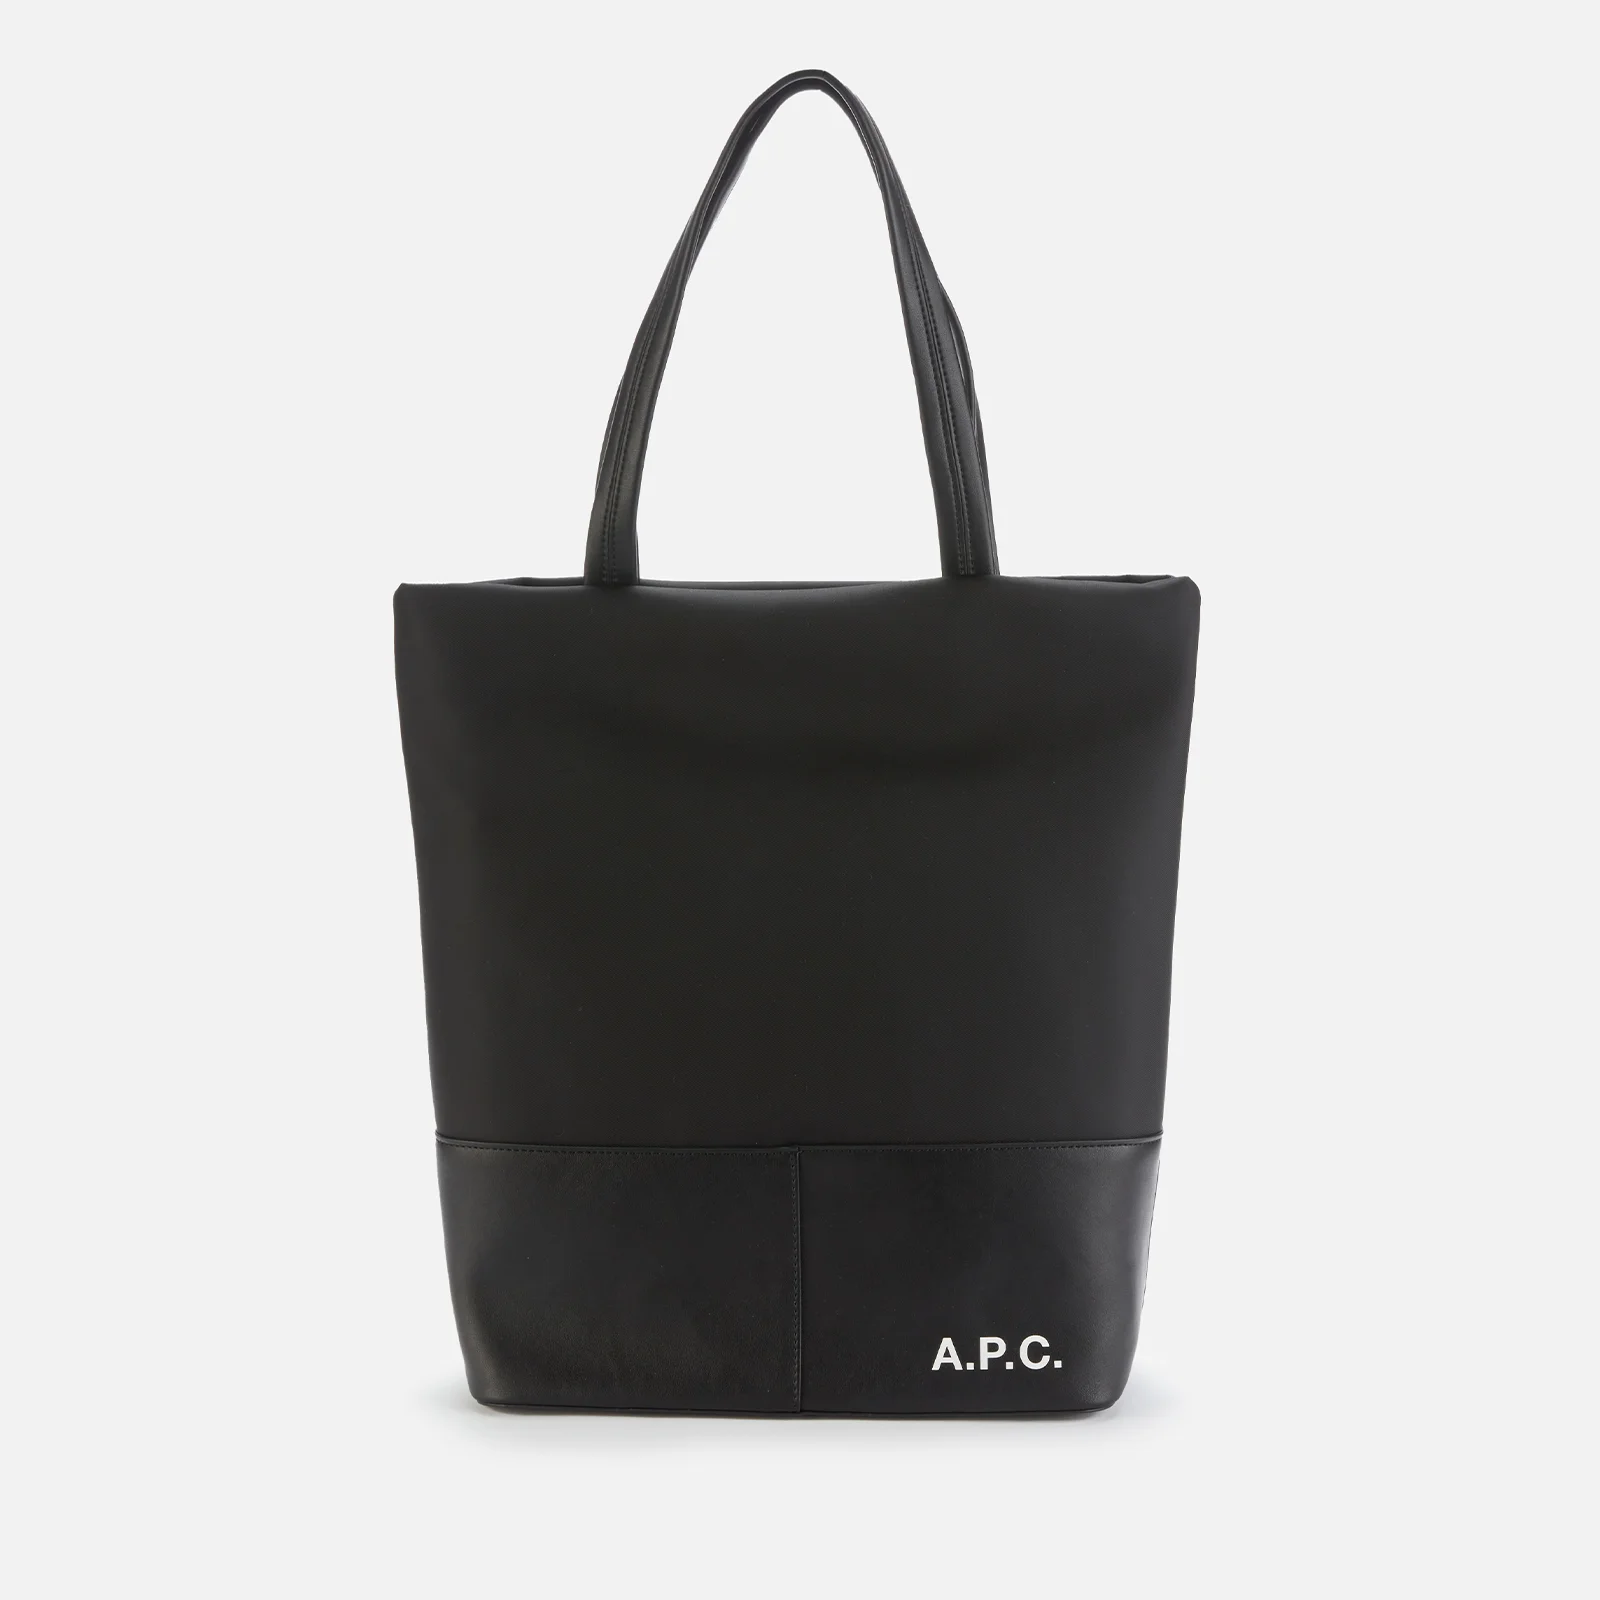 A.P.C. Men's Camden Shopping Bag - Black Image 1